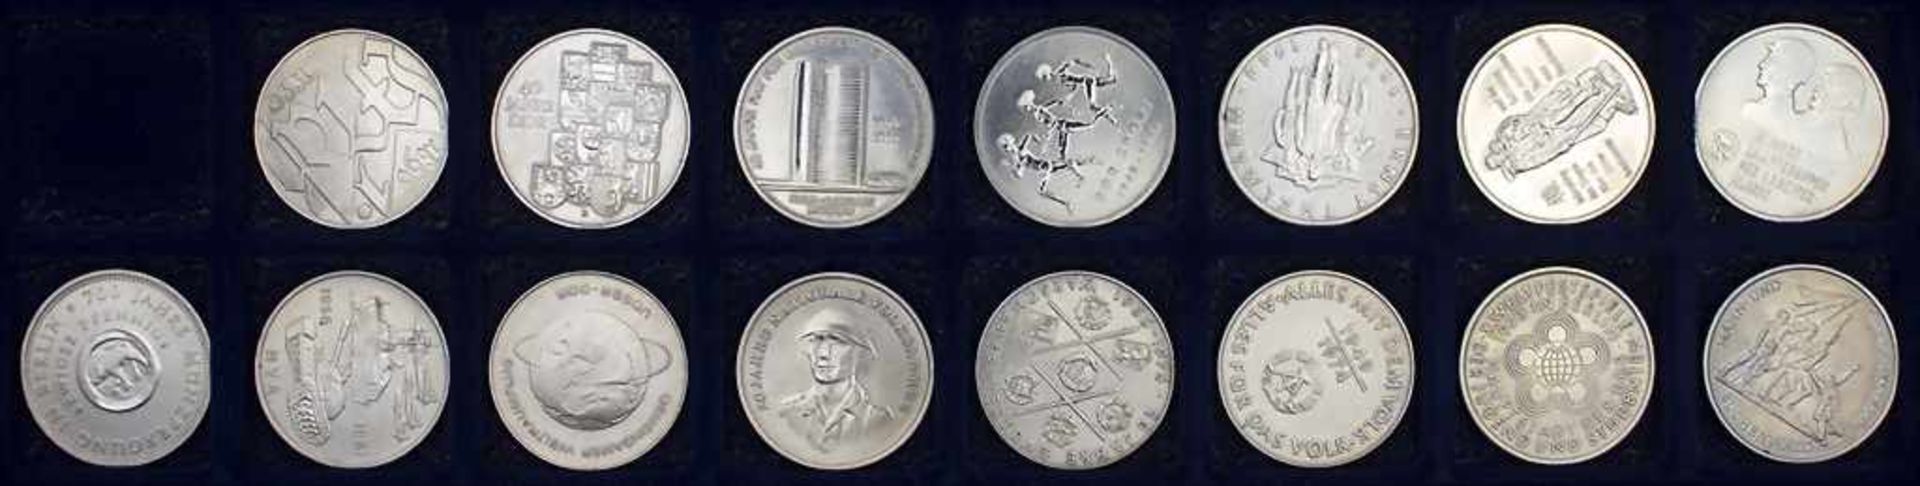 Komplette Sammlung Gedenkmünzen der DDR / Collection commemorative coins of the GDR* 5 Mark: - Bild 22 aus 22